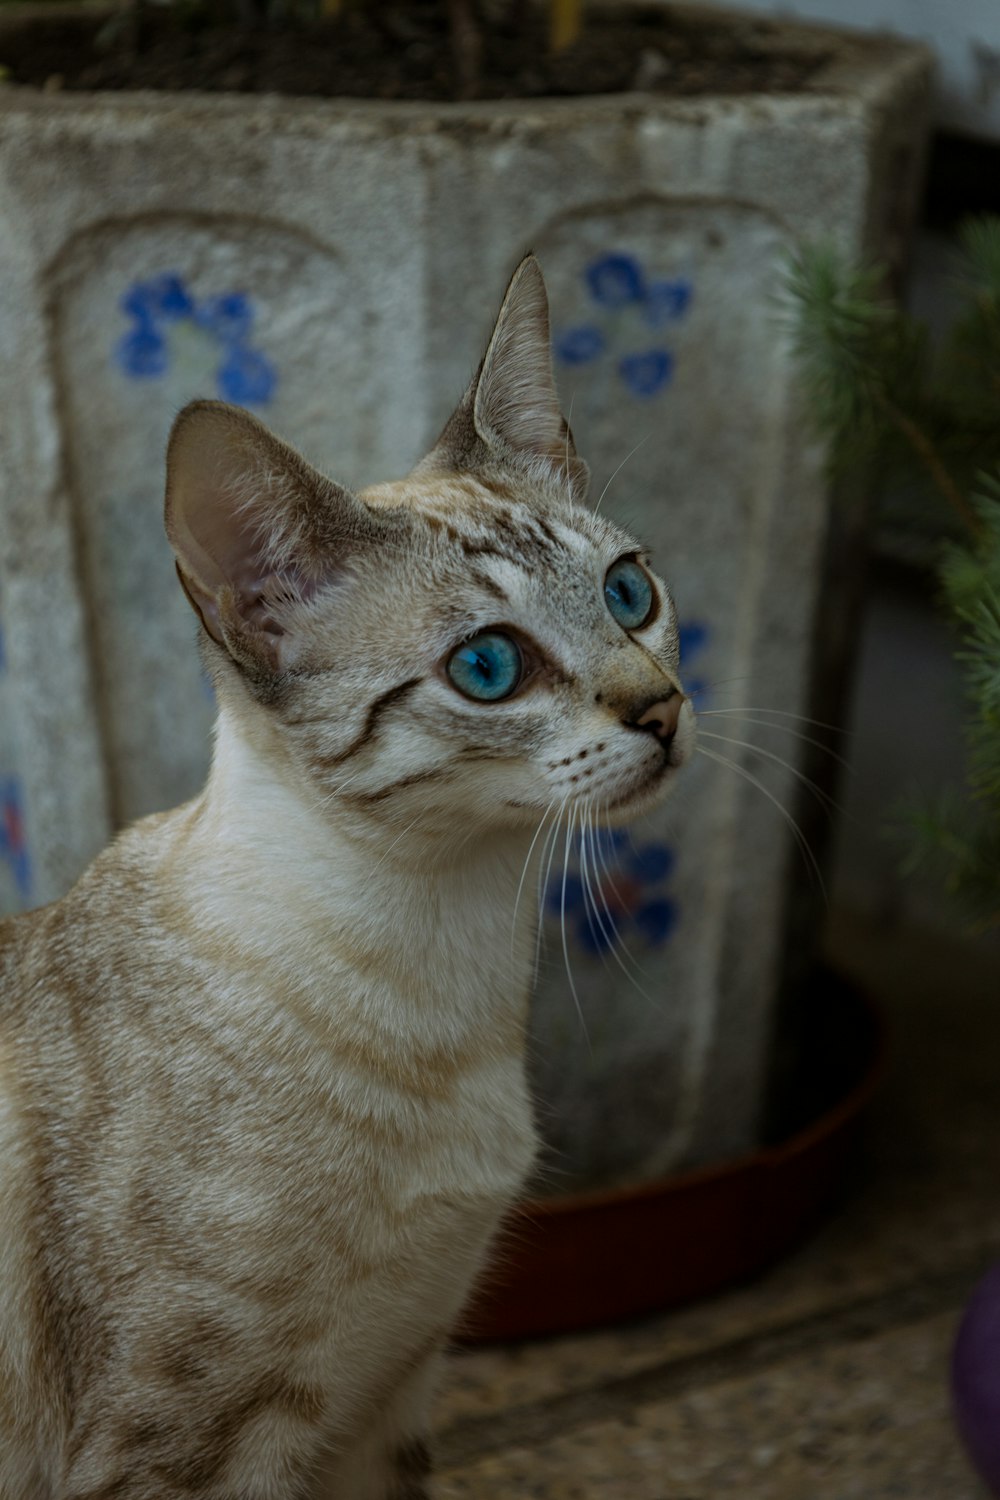 Un gatto con gli occhi azzurri seduto accanto a una pianta in vaso